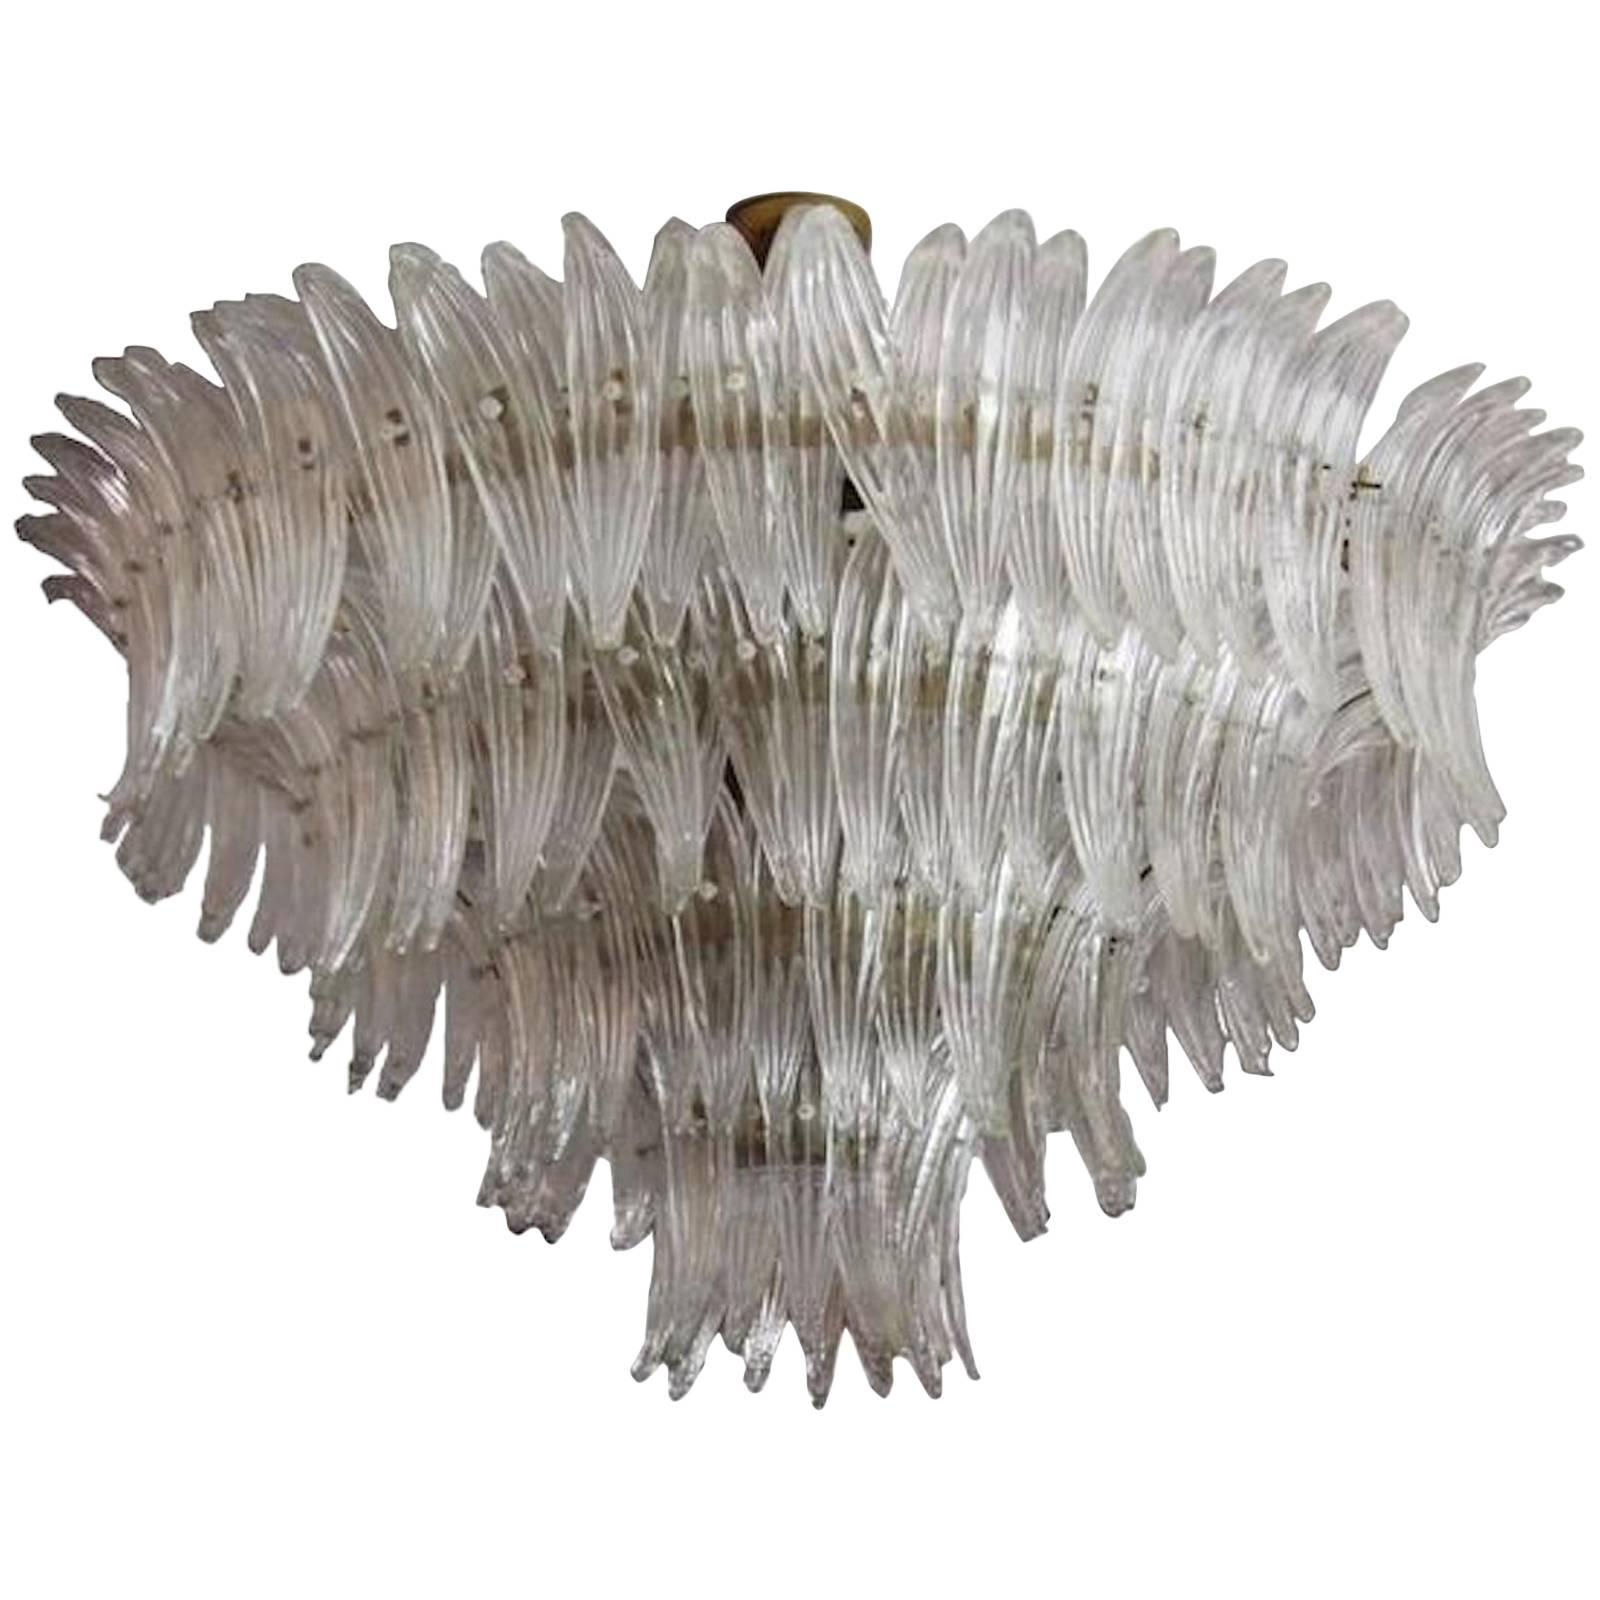 Luxury Murano, glass chandelier, 100% handmade in Murano.